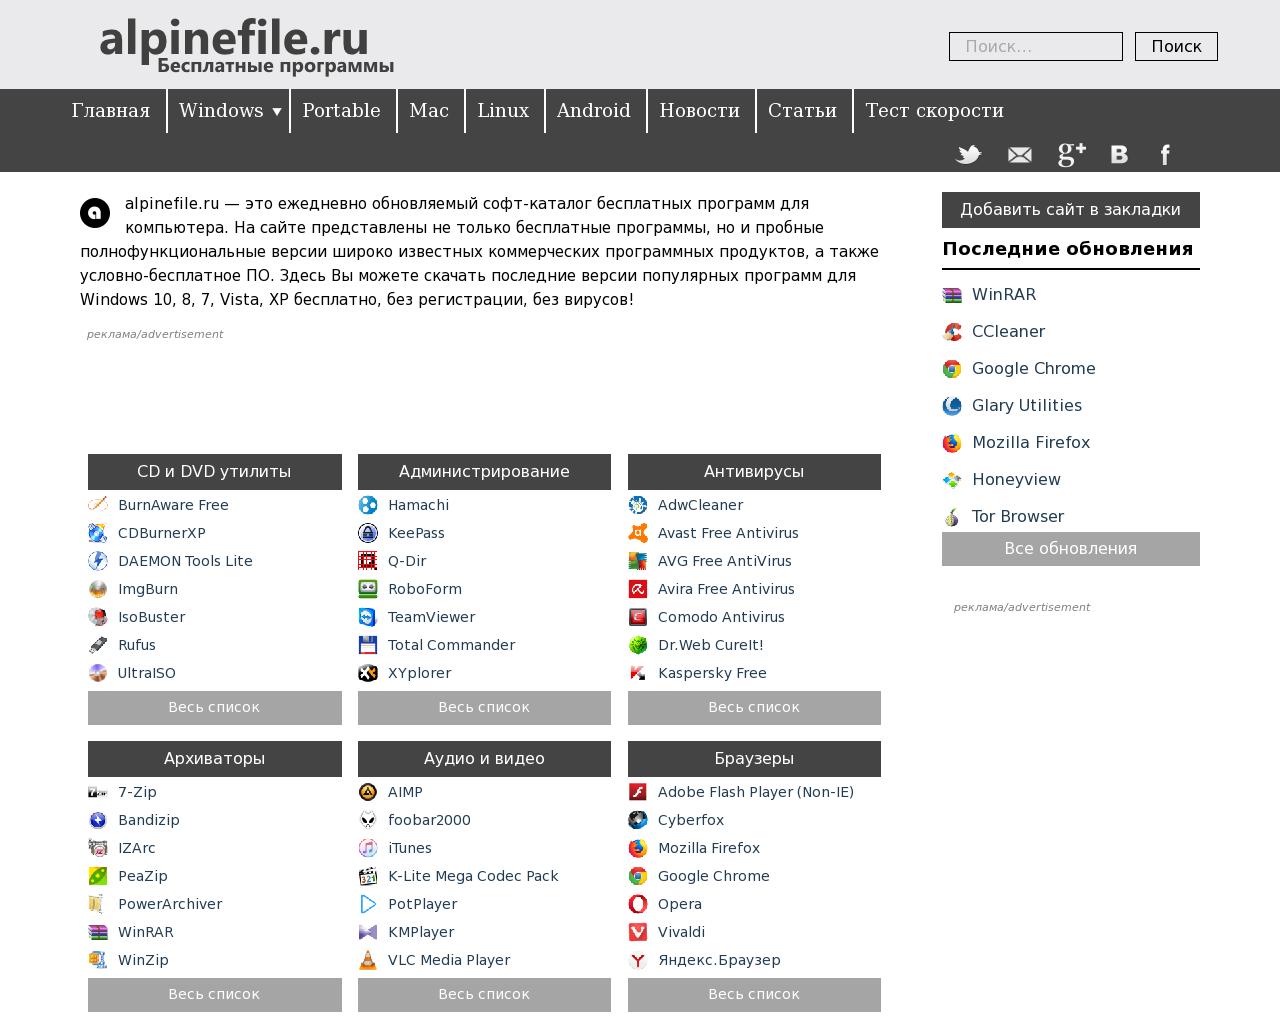 Изображение сайта alpinefile.ru в разрешении 1280x1024